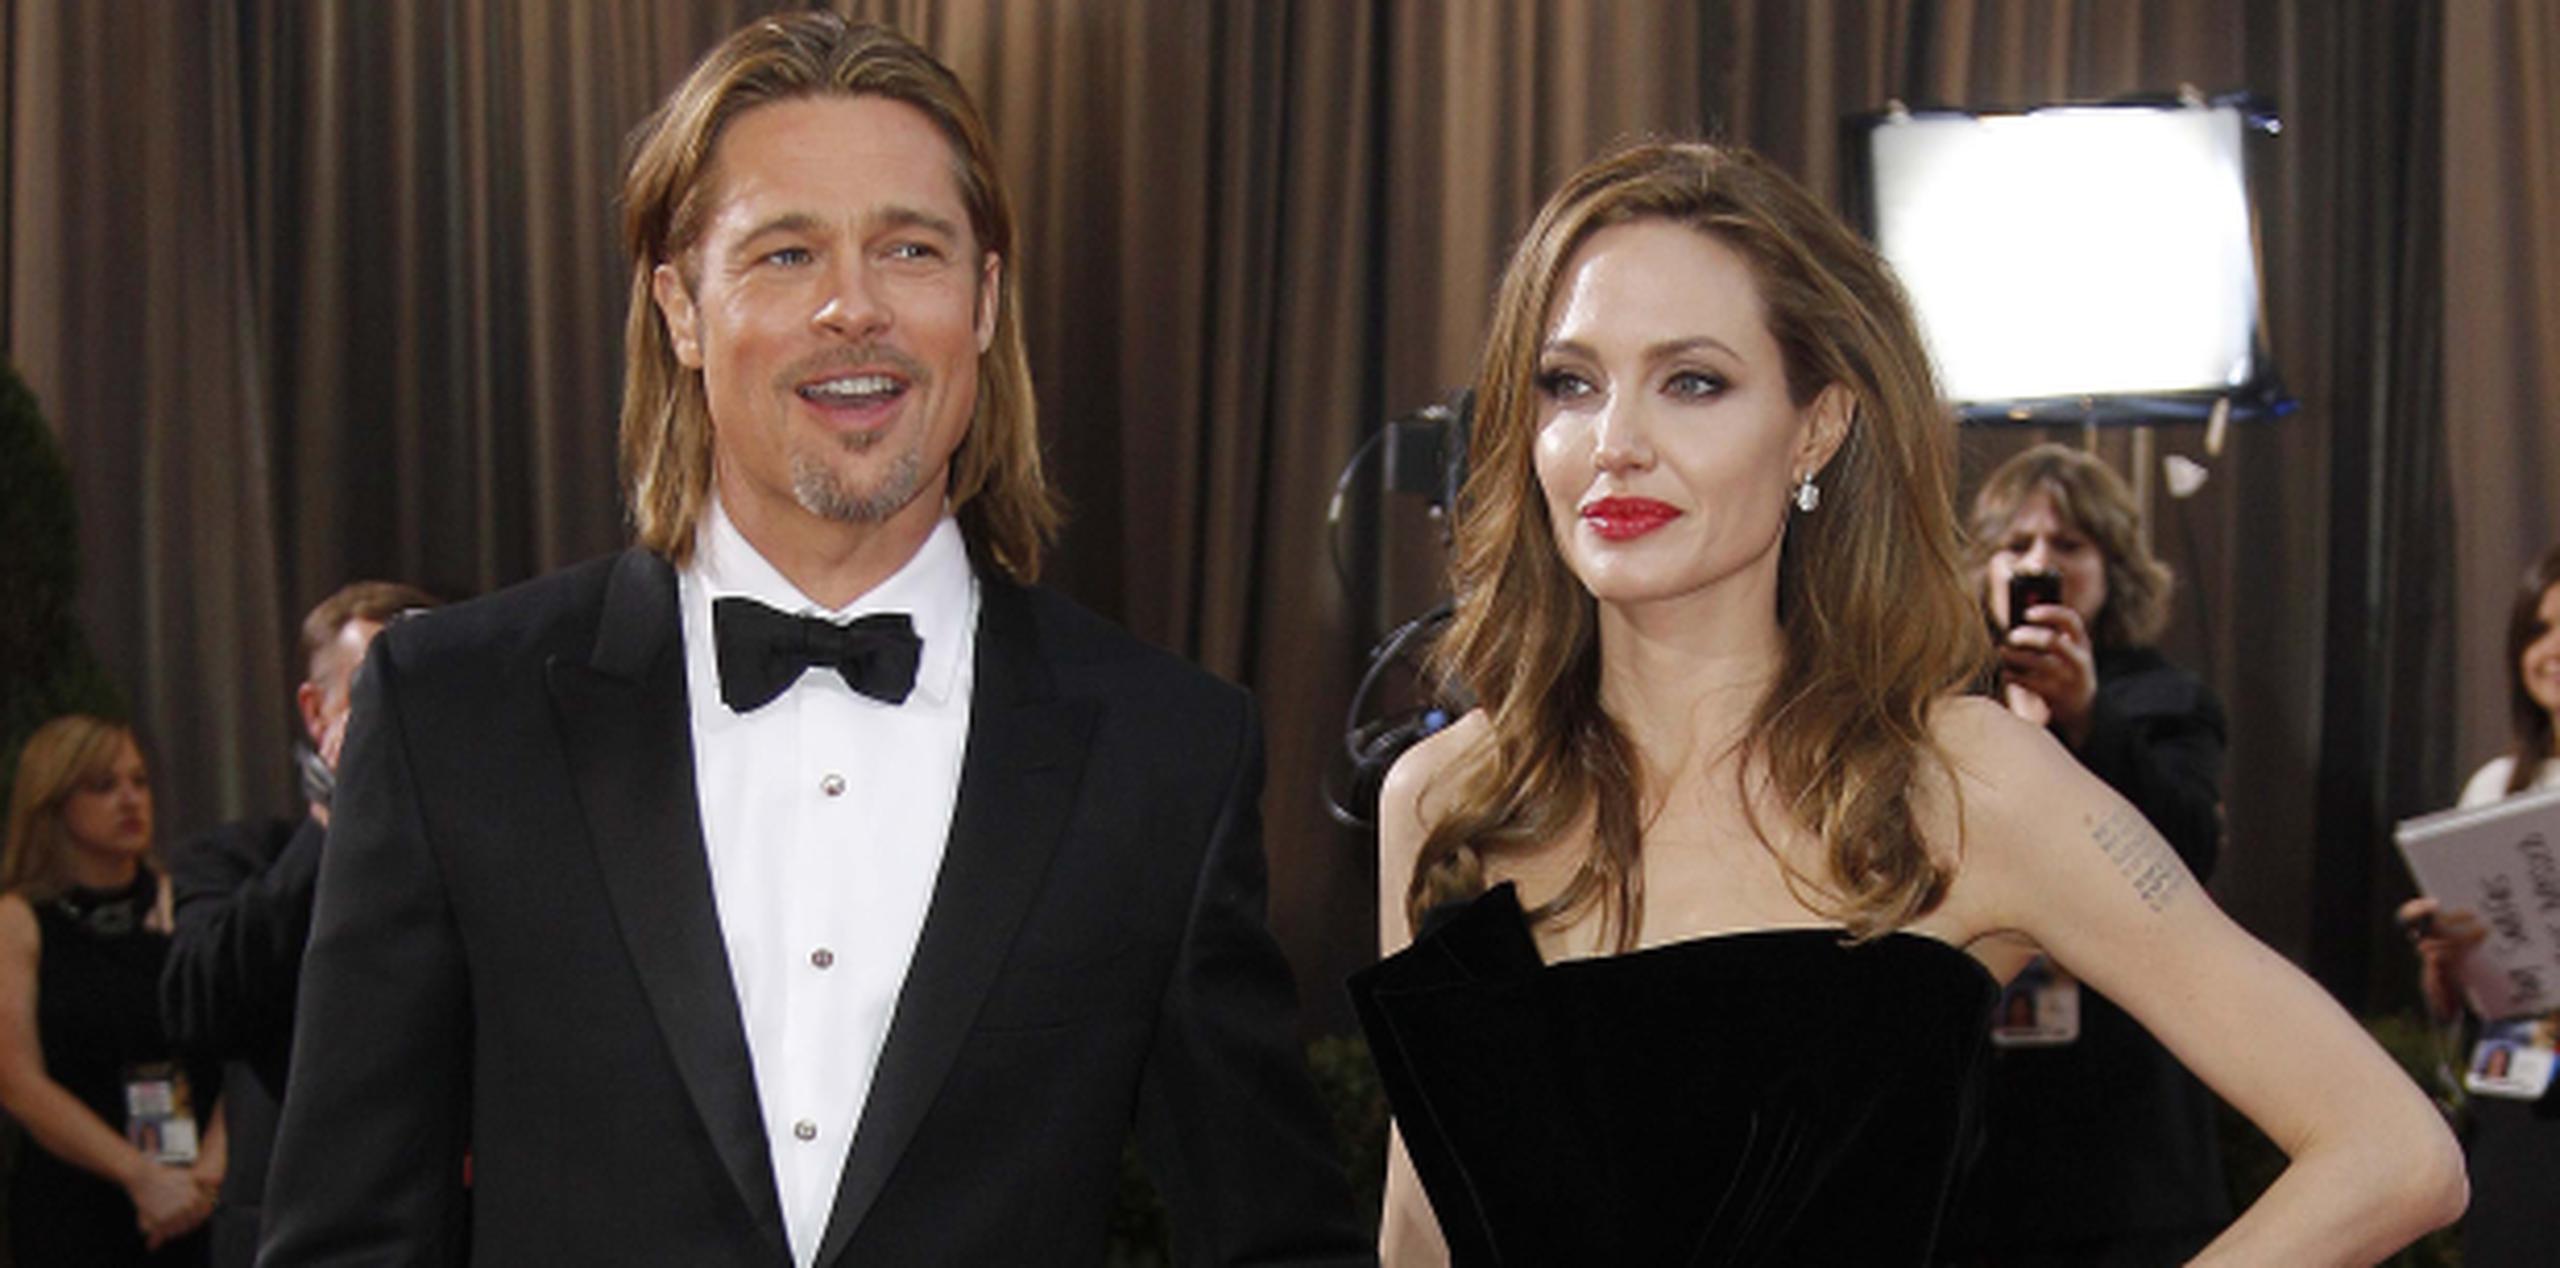 Pitt agradeció el "cuidado y atención" proporcionados por el equipo médico que atendió a Jolie, con quien tiene seis hijos y que en el artículo se reconocía "afortunada" por tener un compañero "tan amoroso y solidario". (AP)